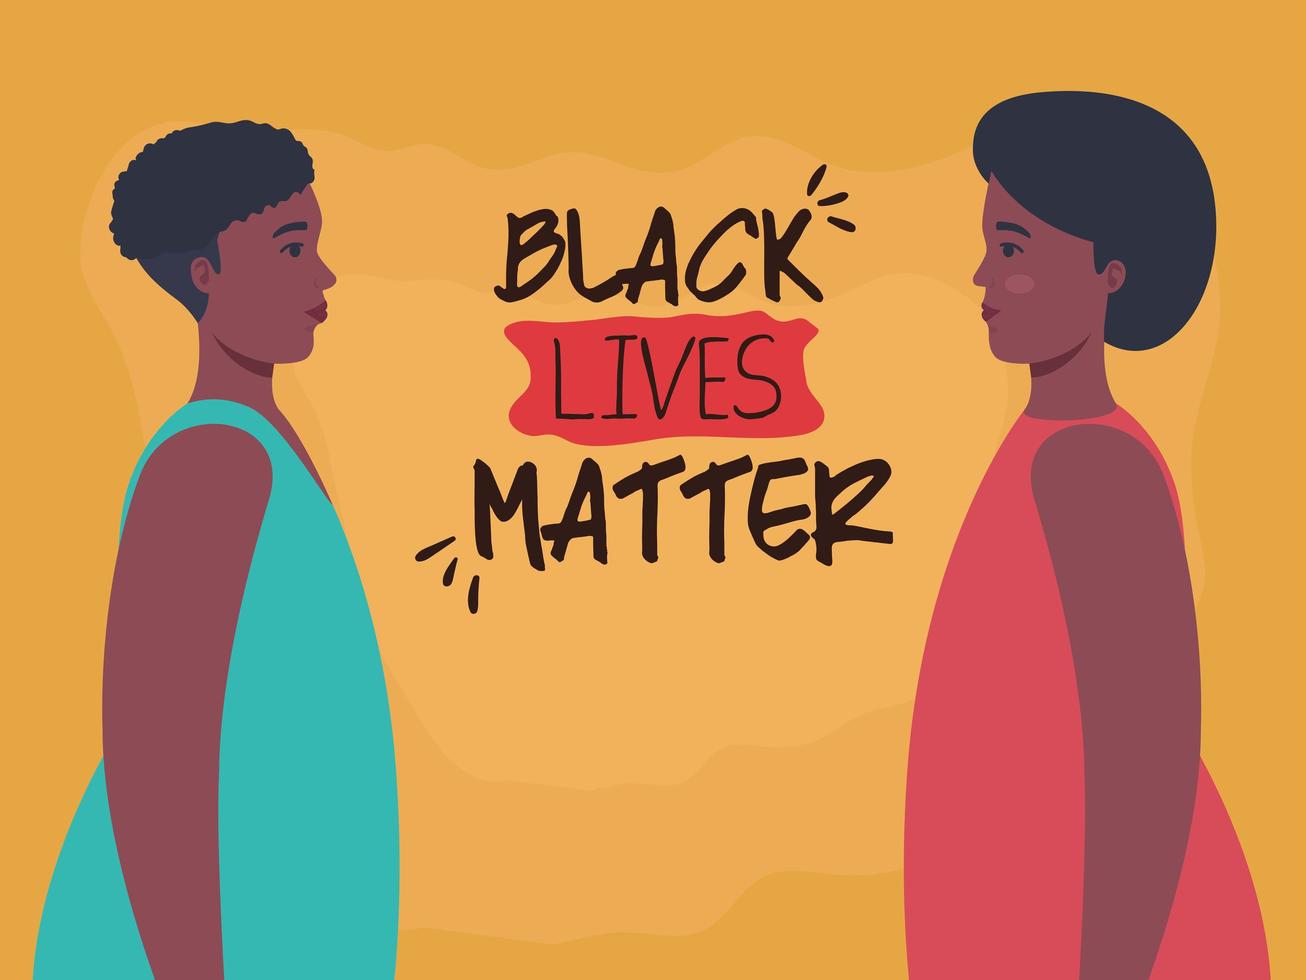 Las vidas negras importan banner con mujeres, detener el concepto de racismo vector